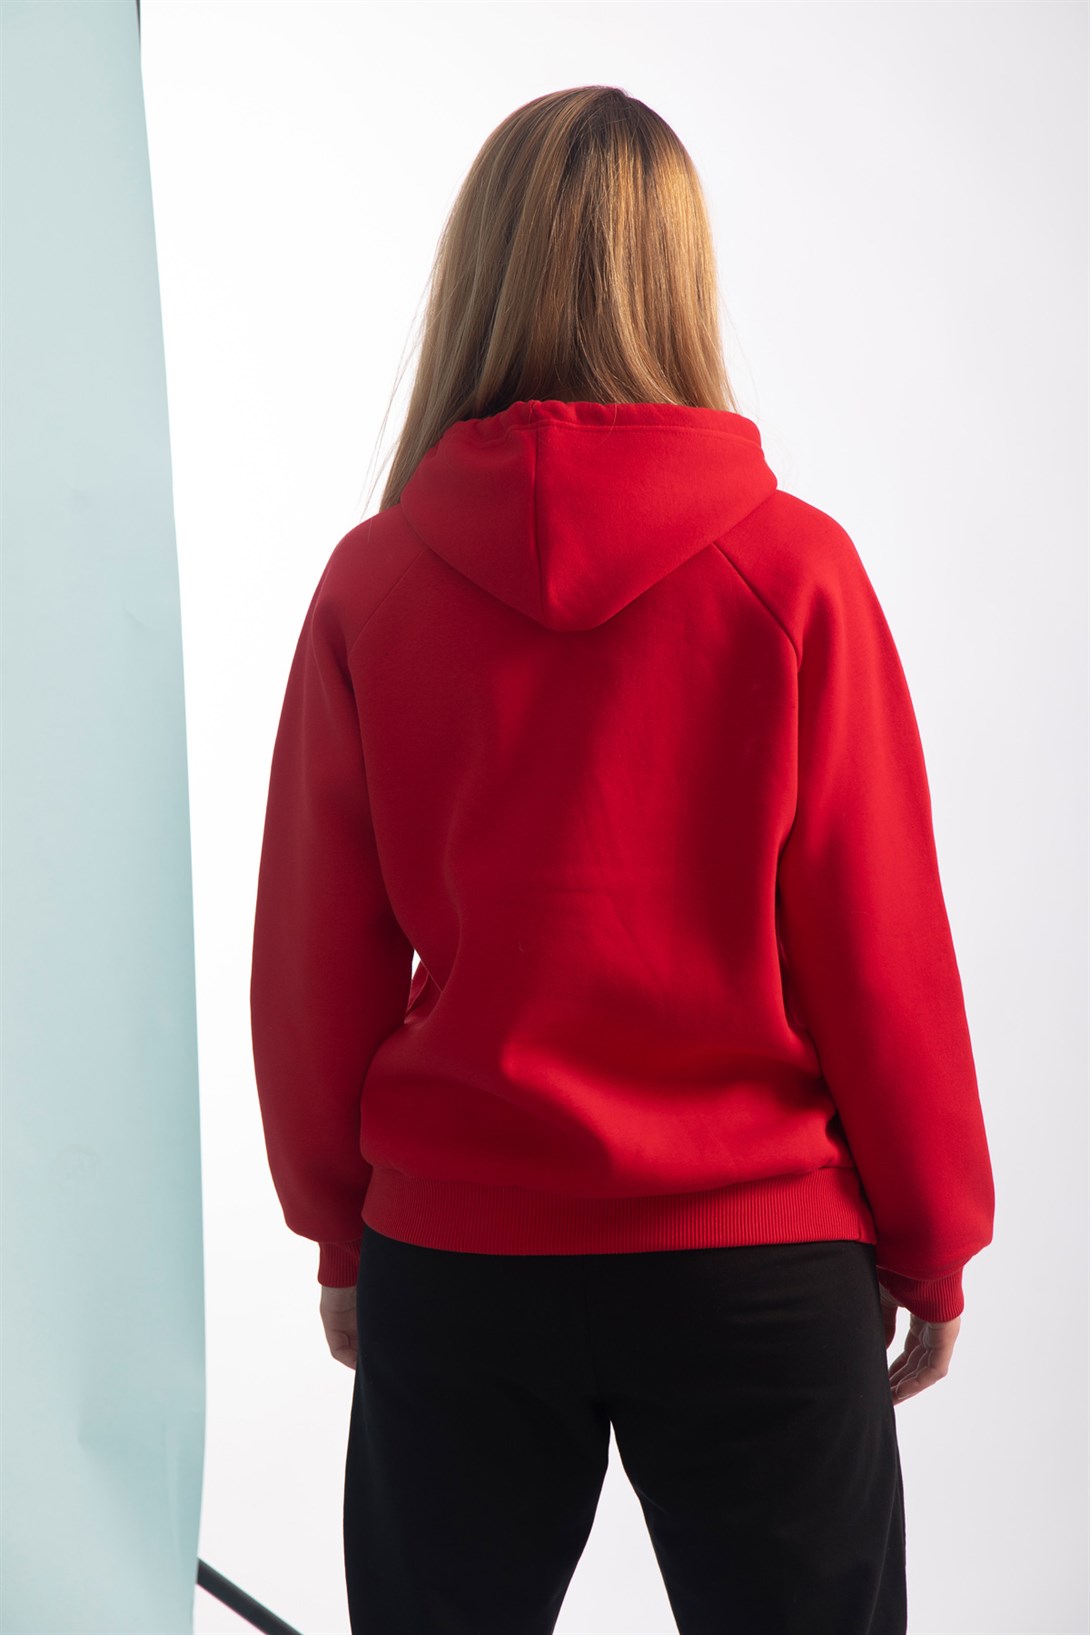 Trendiz Kadın Basic Sweatshirt Kırmızı